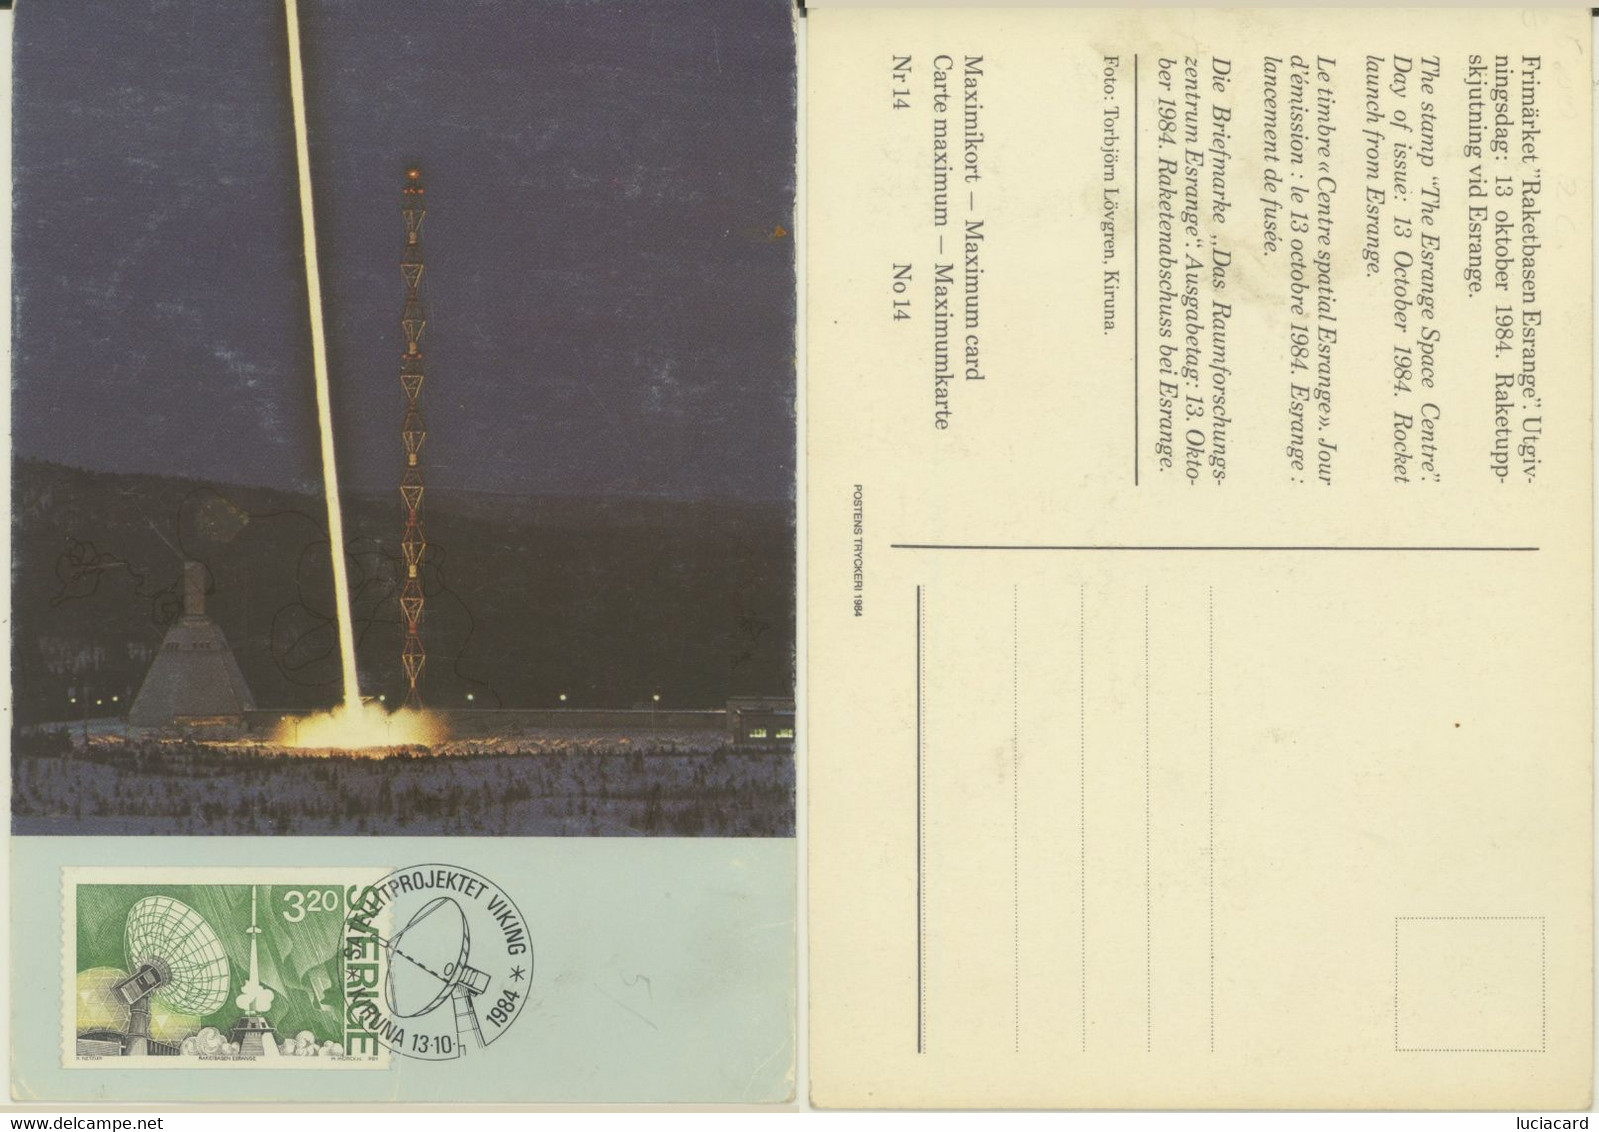 SVERIGE MAXIMUM CARD "THE ESRANGE SPACE CENTRE" DAY OF ISSUE 13 OCTOBER 1984 - Cartes-maximum (CM)